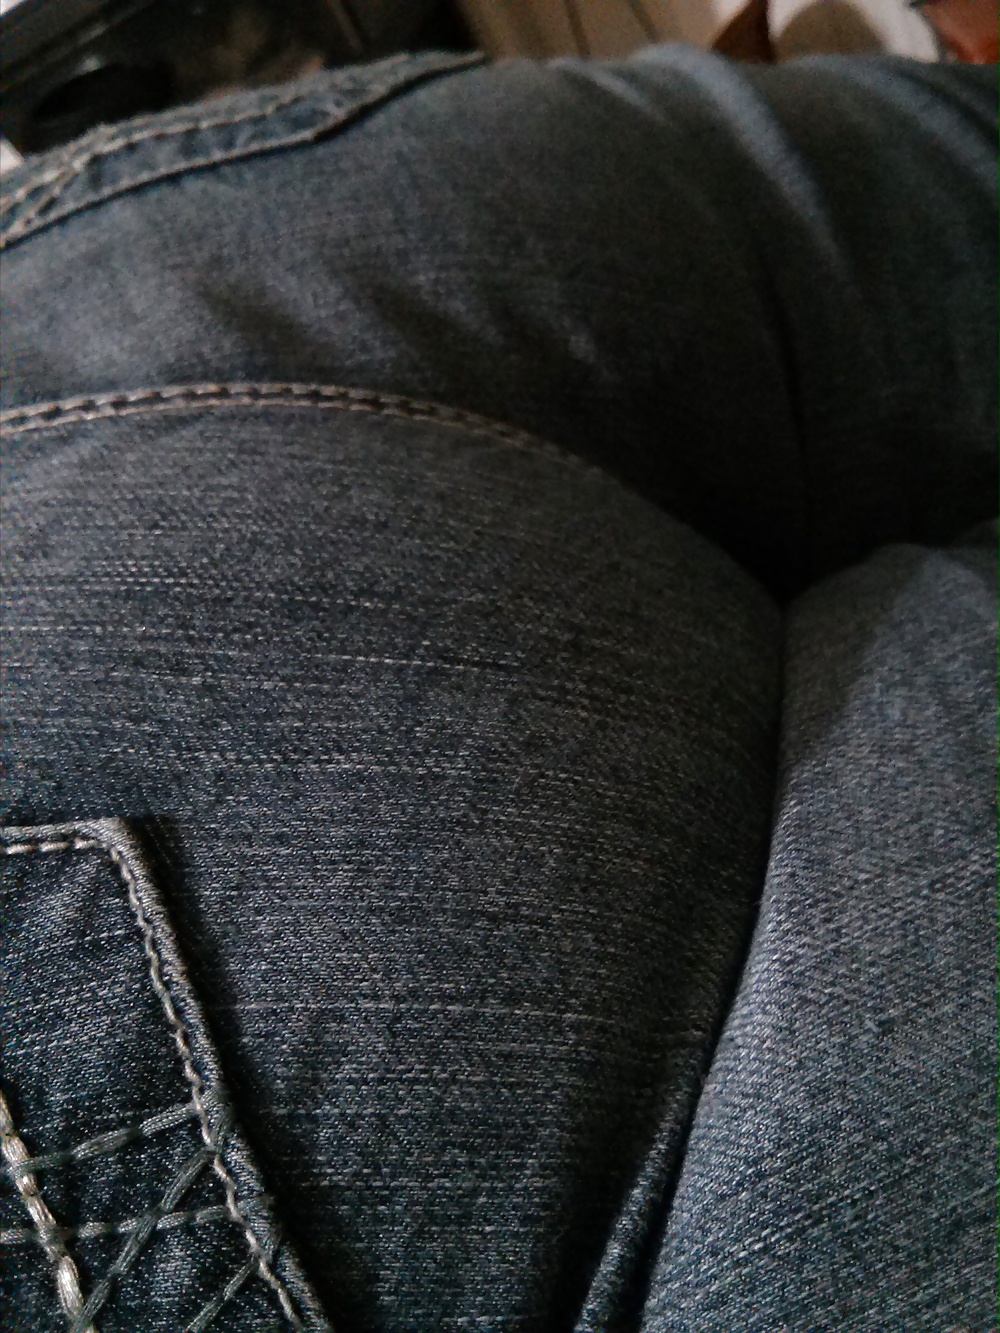 Graisses Large Ass Latina En Jeans Serrés #31868424